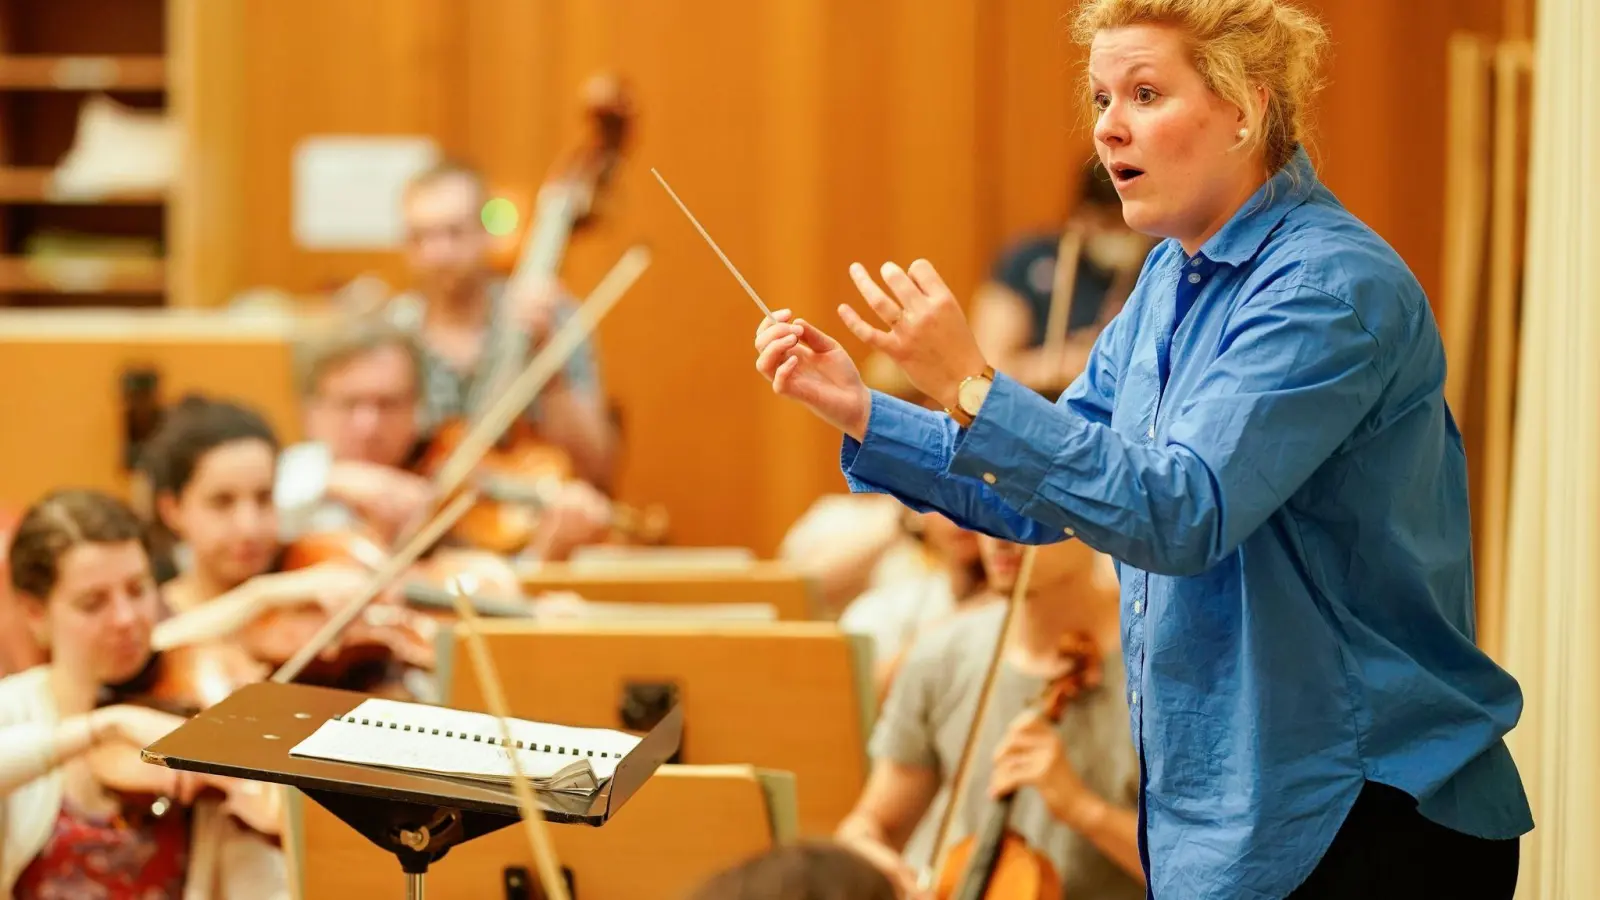 Stimmt die Balance der Instrumente? Dirigentin Annalena Hösel tariert das in ihrem Job aus. (Foto: Uwe Anspach/dpa-tmn)